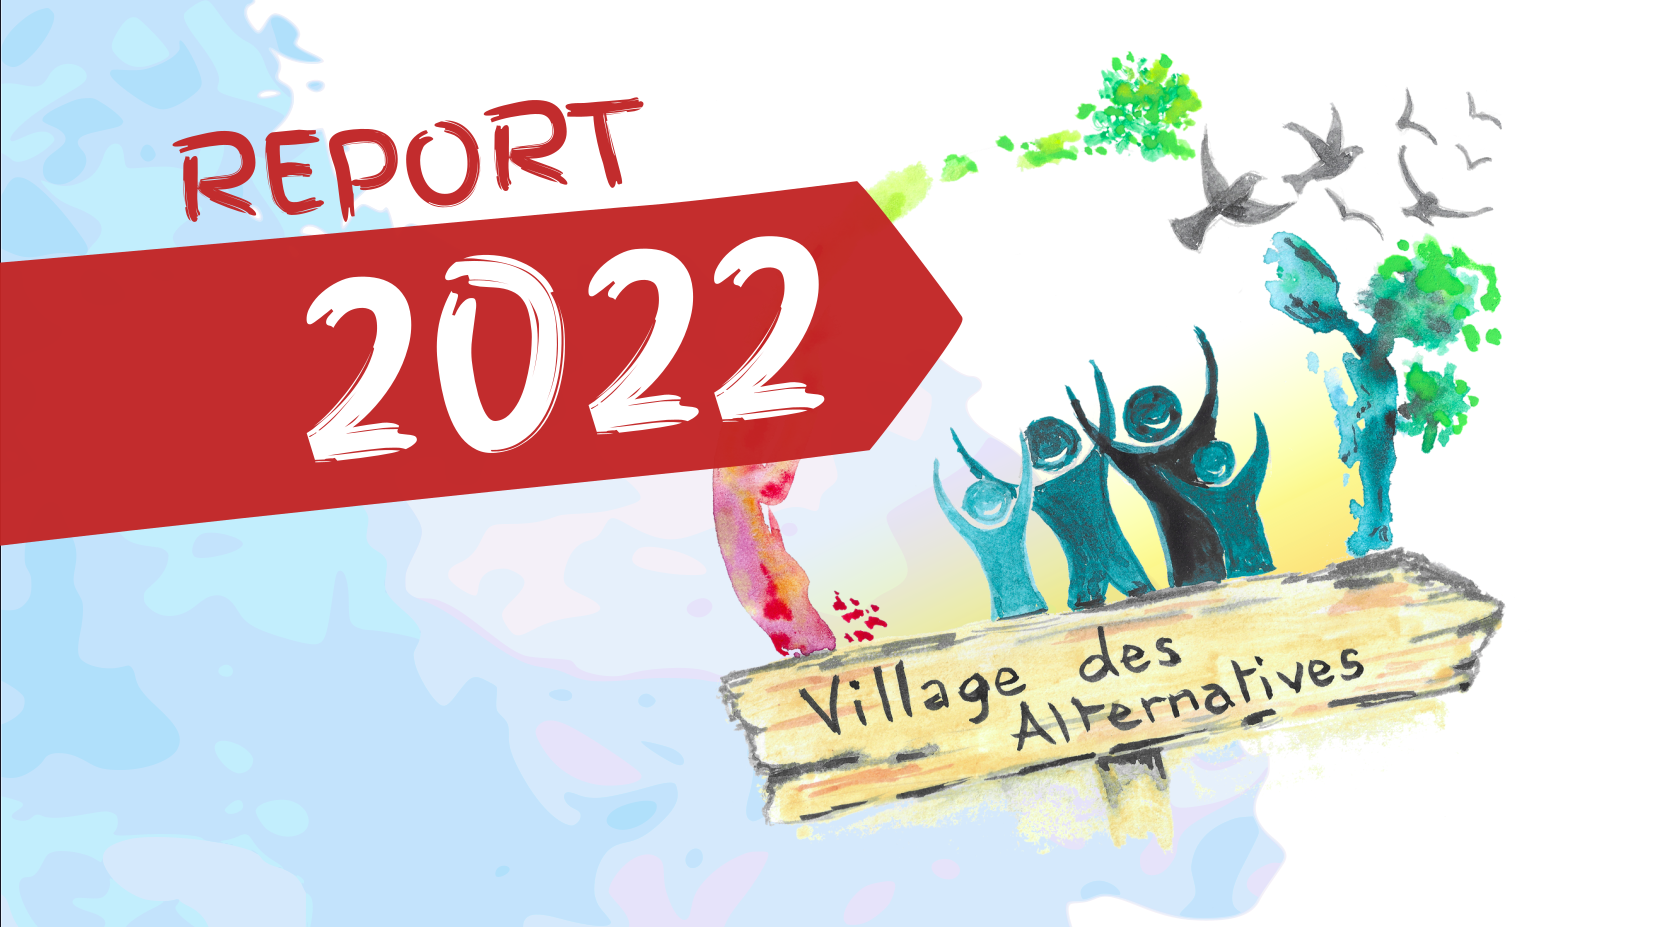 Lire la suite à propos de l’article CP . Report à 2022 du festival Village des Alternatives Alternatiba